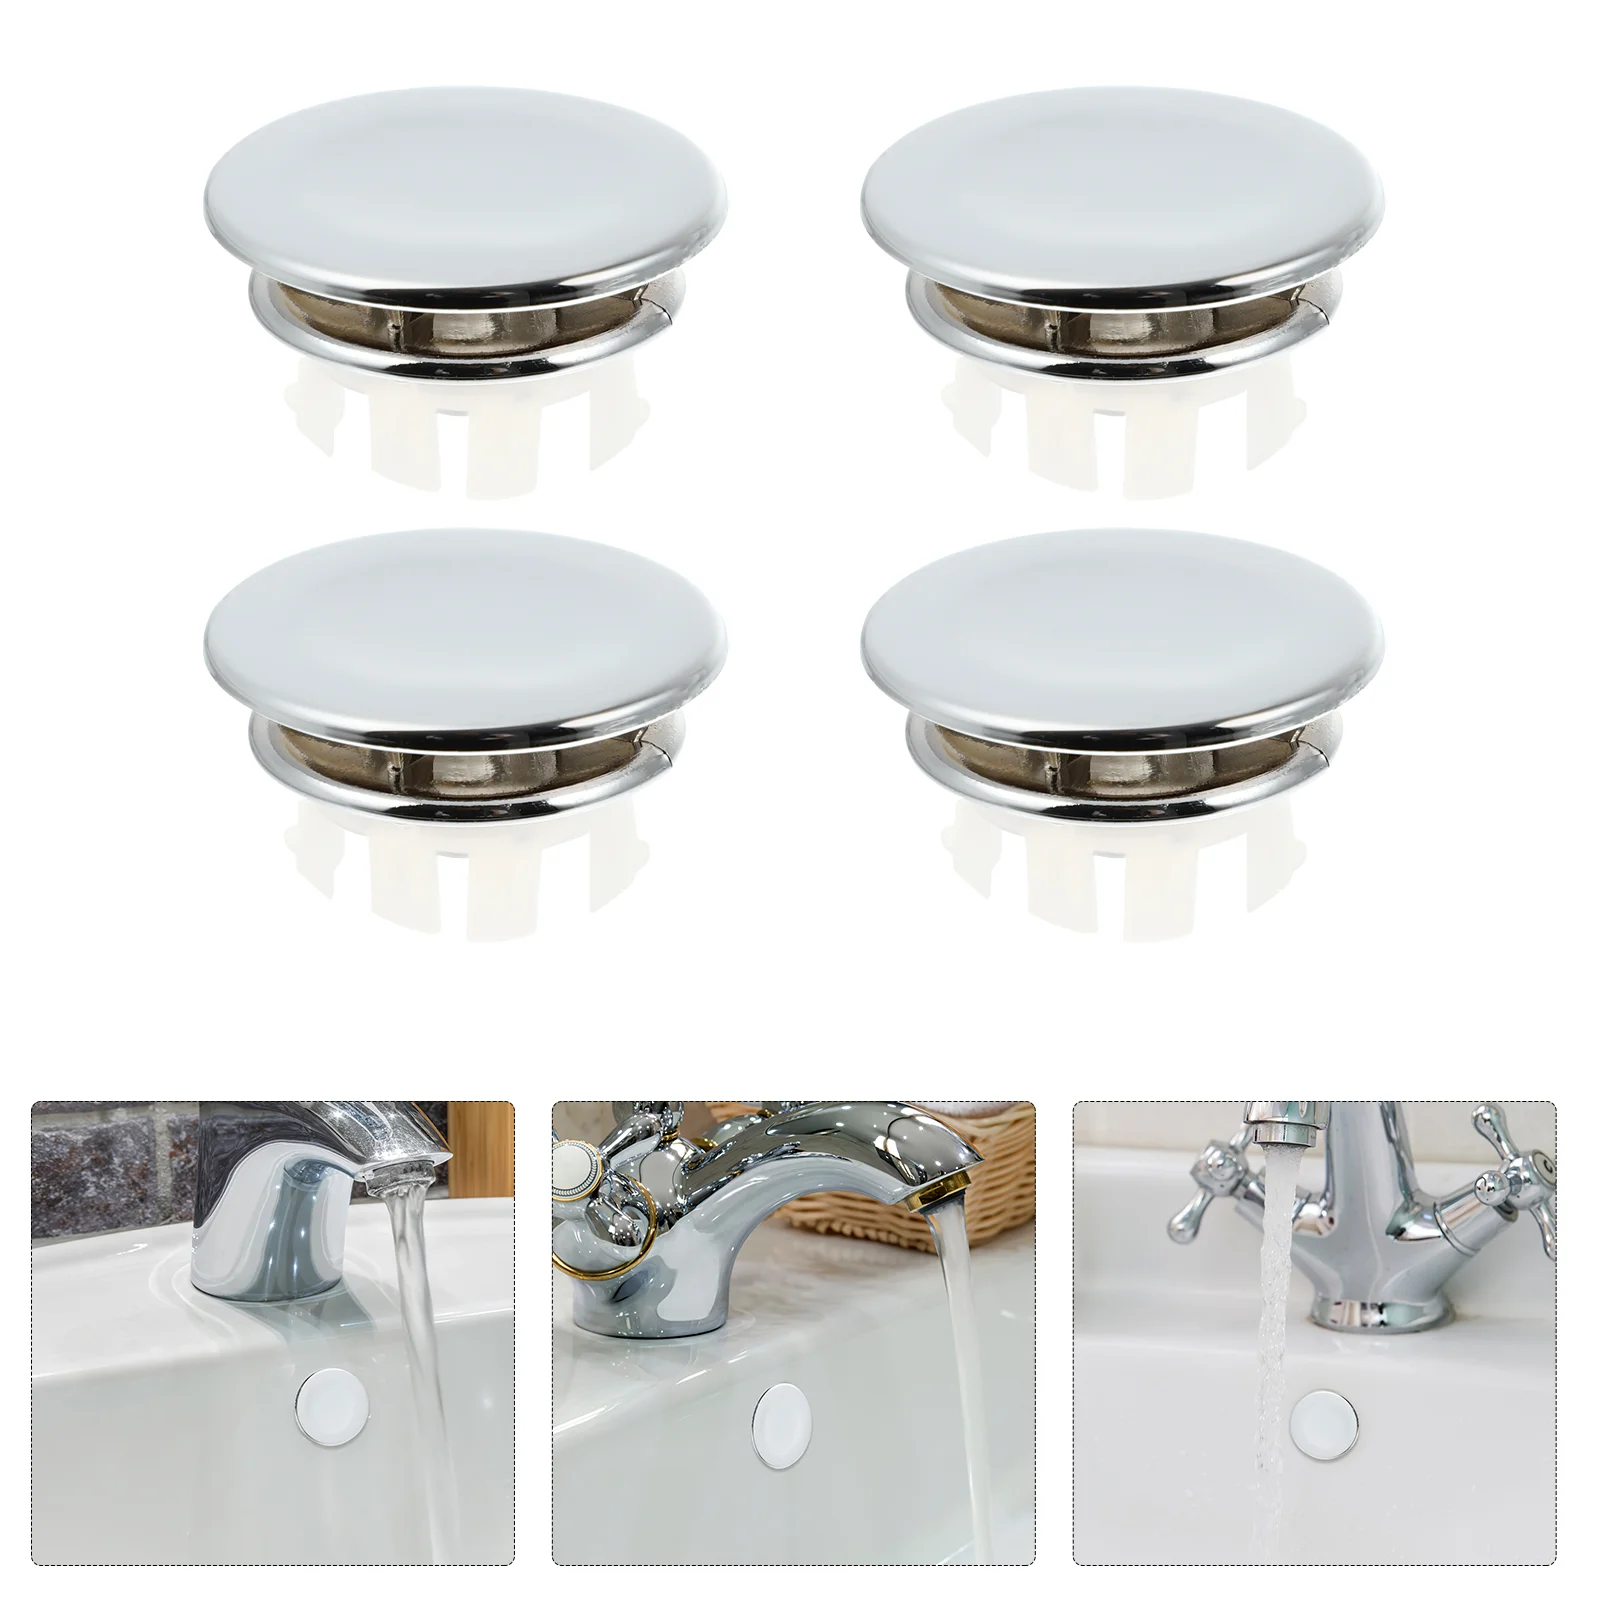 

4 Pcs Round Overflow Cover Ring Bathroom Sink Trim Cap Decked Basin Decore Insert Kitchen Bathtub